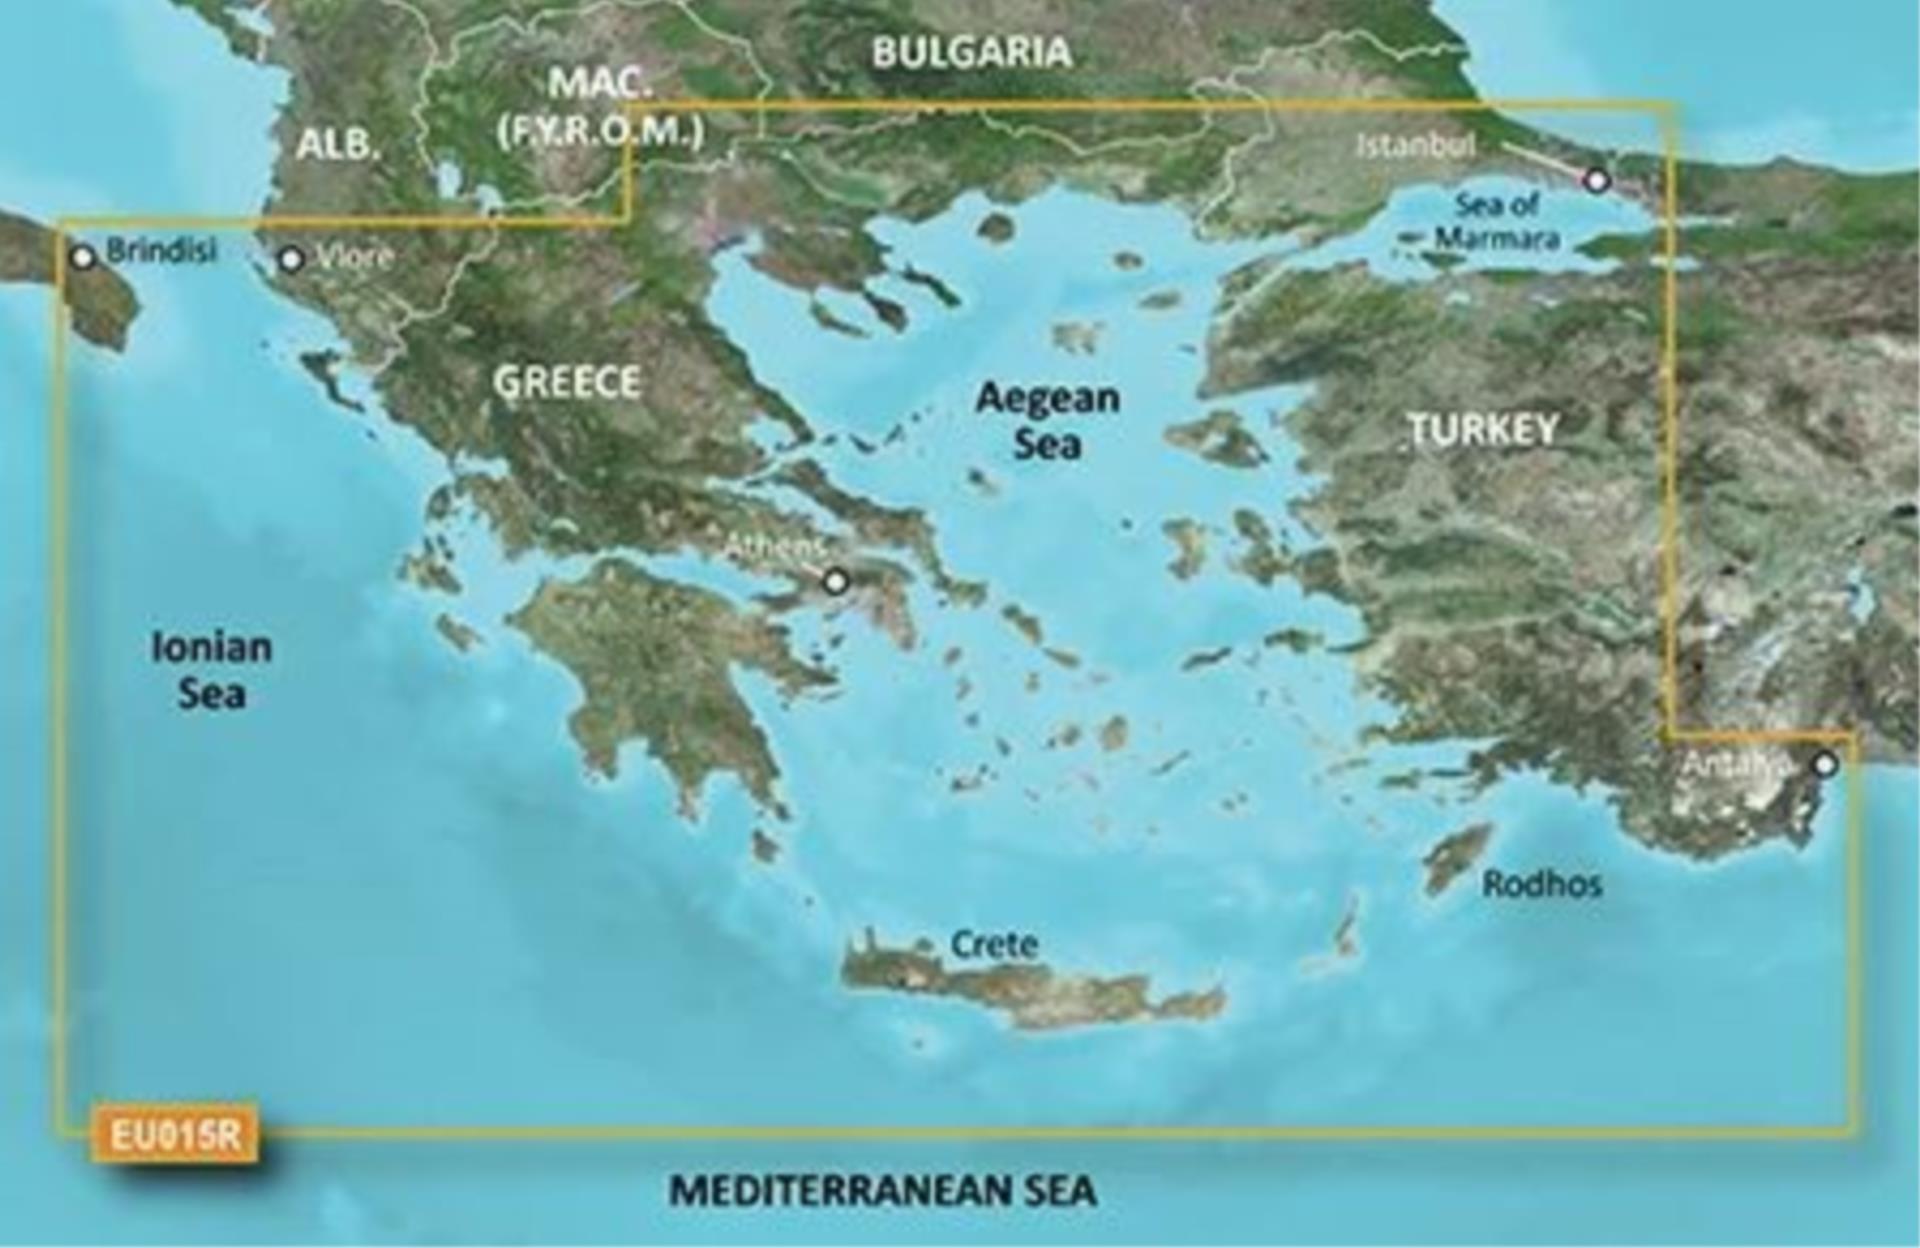 Garmin G3 Vision EU015R Aeg. Sea & Sea of Marmara